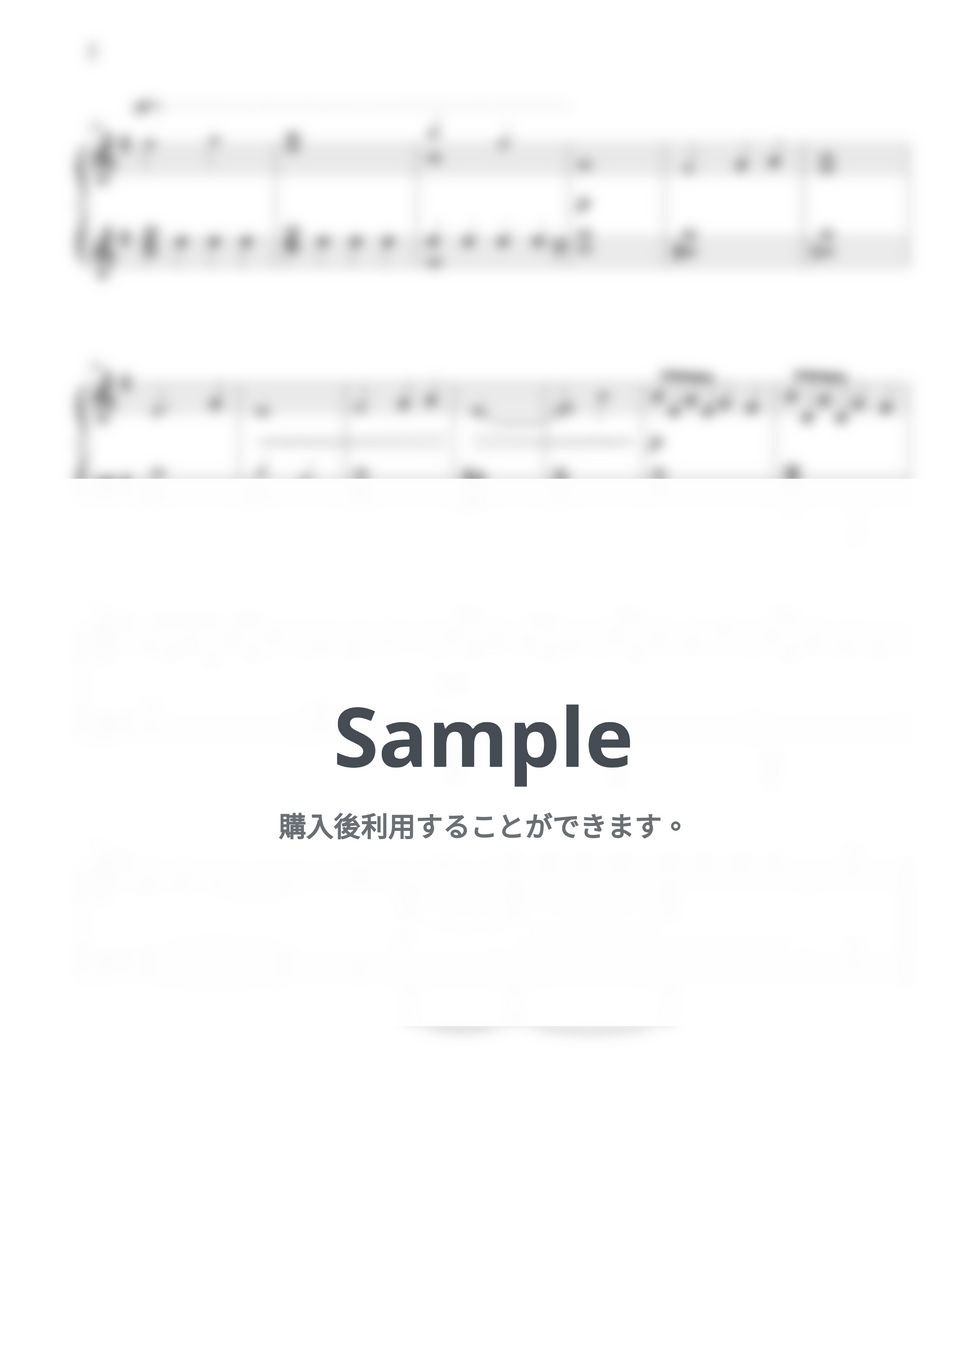 澤野弘之 - 進撃vc-pf20130218巨人 (進撃の巨人 OST) by THIS IS PIANO